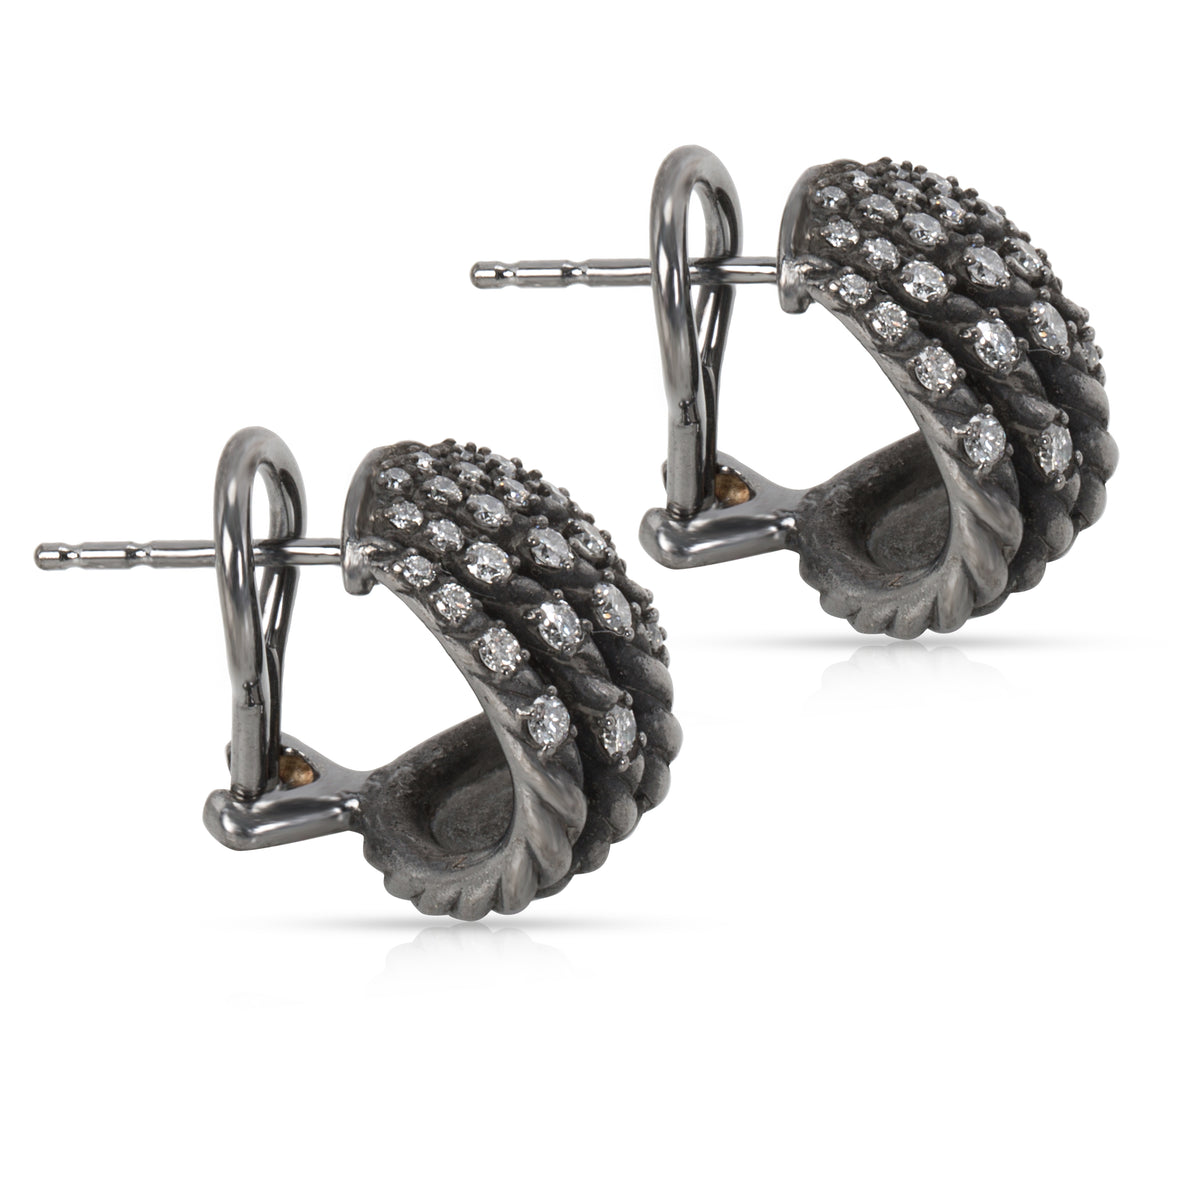 David Yurman Tempo Diamond Earrings in Darkened Sterling Silver  0.61CTW